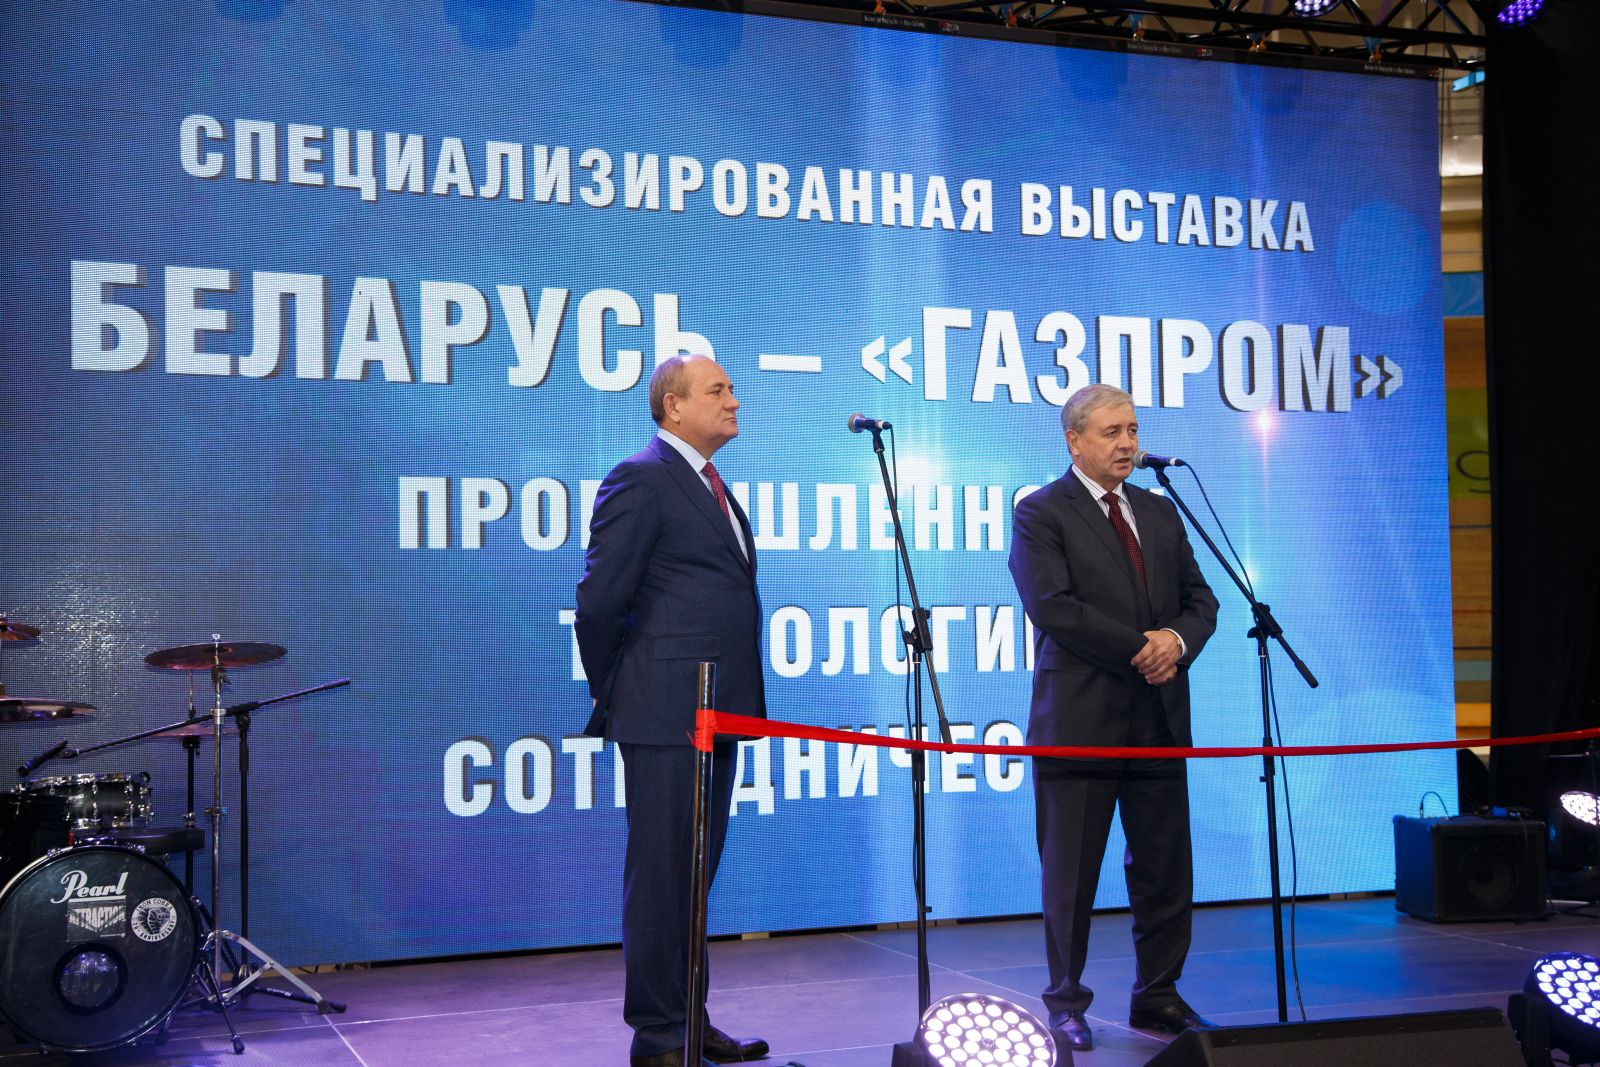 Специализированная выставка "Беларусь – "Газпром": Промышленность. Технологии. Сотрудничество"